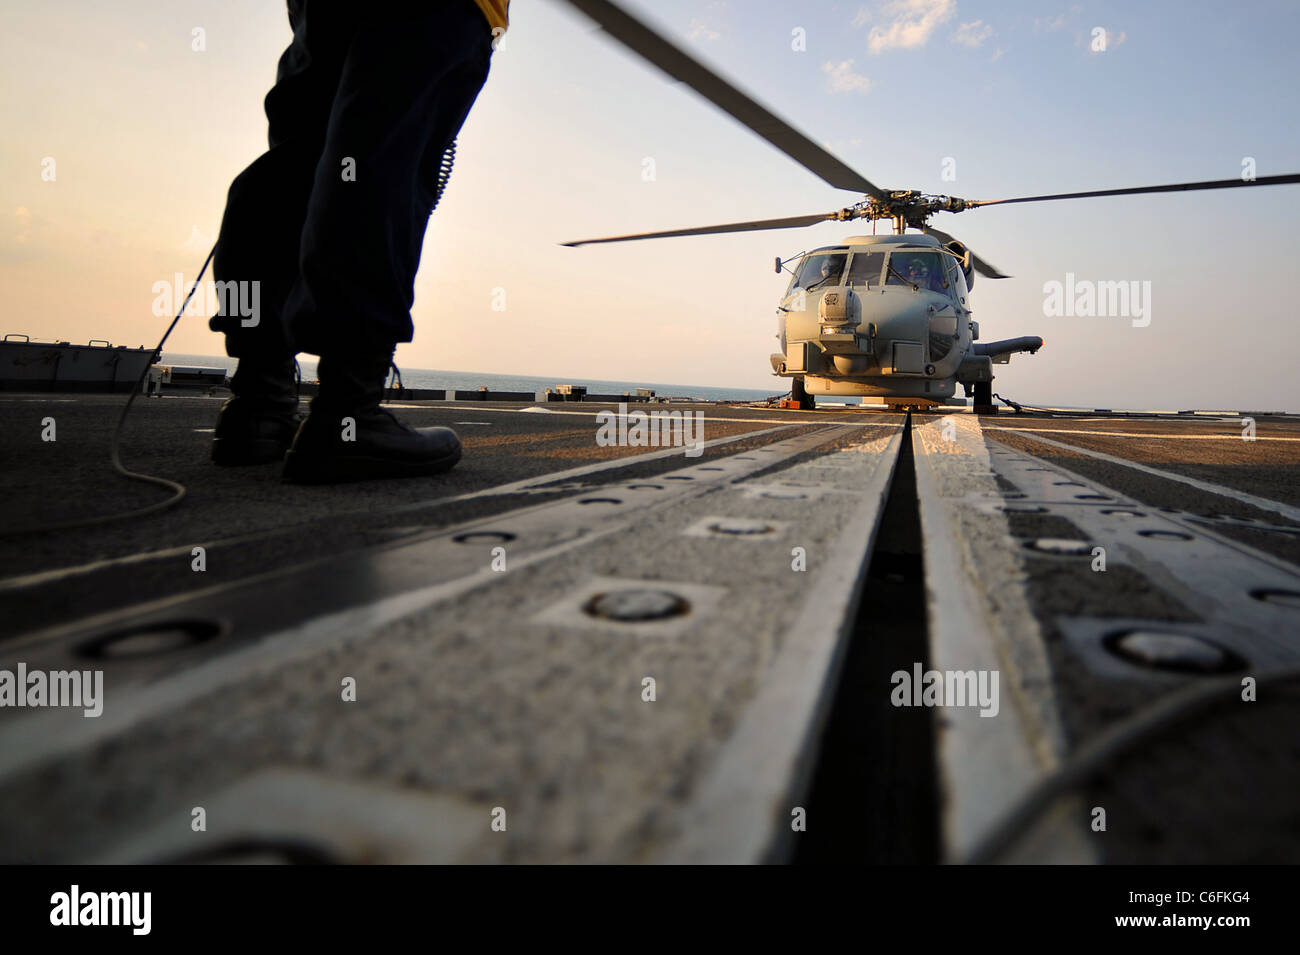 Océano Atlántico (Ago. 27, 2011) -- Boatswain's Mate Seaman Emmanuel Dixon señala un SH-60B Sea Hawk helicóptero, adjunta al escuadrón anti-submarina de helicópteros ligeros (HSL) 42, para el aterrizaje durante las operaciones de vuelo a bordo del crucero de misiles guiados USS Vicksburg (CG-69). Vicksburg está haciendo preparativos para responder a los daños causados por el huracán Irene si lo solicita. (Ee.Uu. Navy photo by Mass Communication Specialist 2nd Class Gary Granger Jr./liberado) Foto de stock